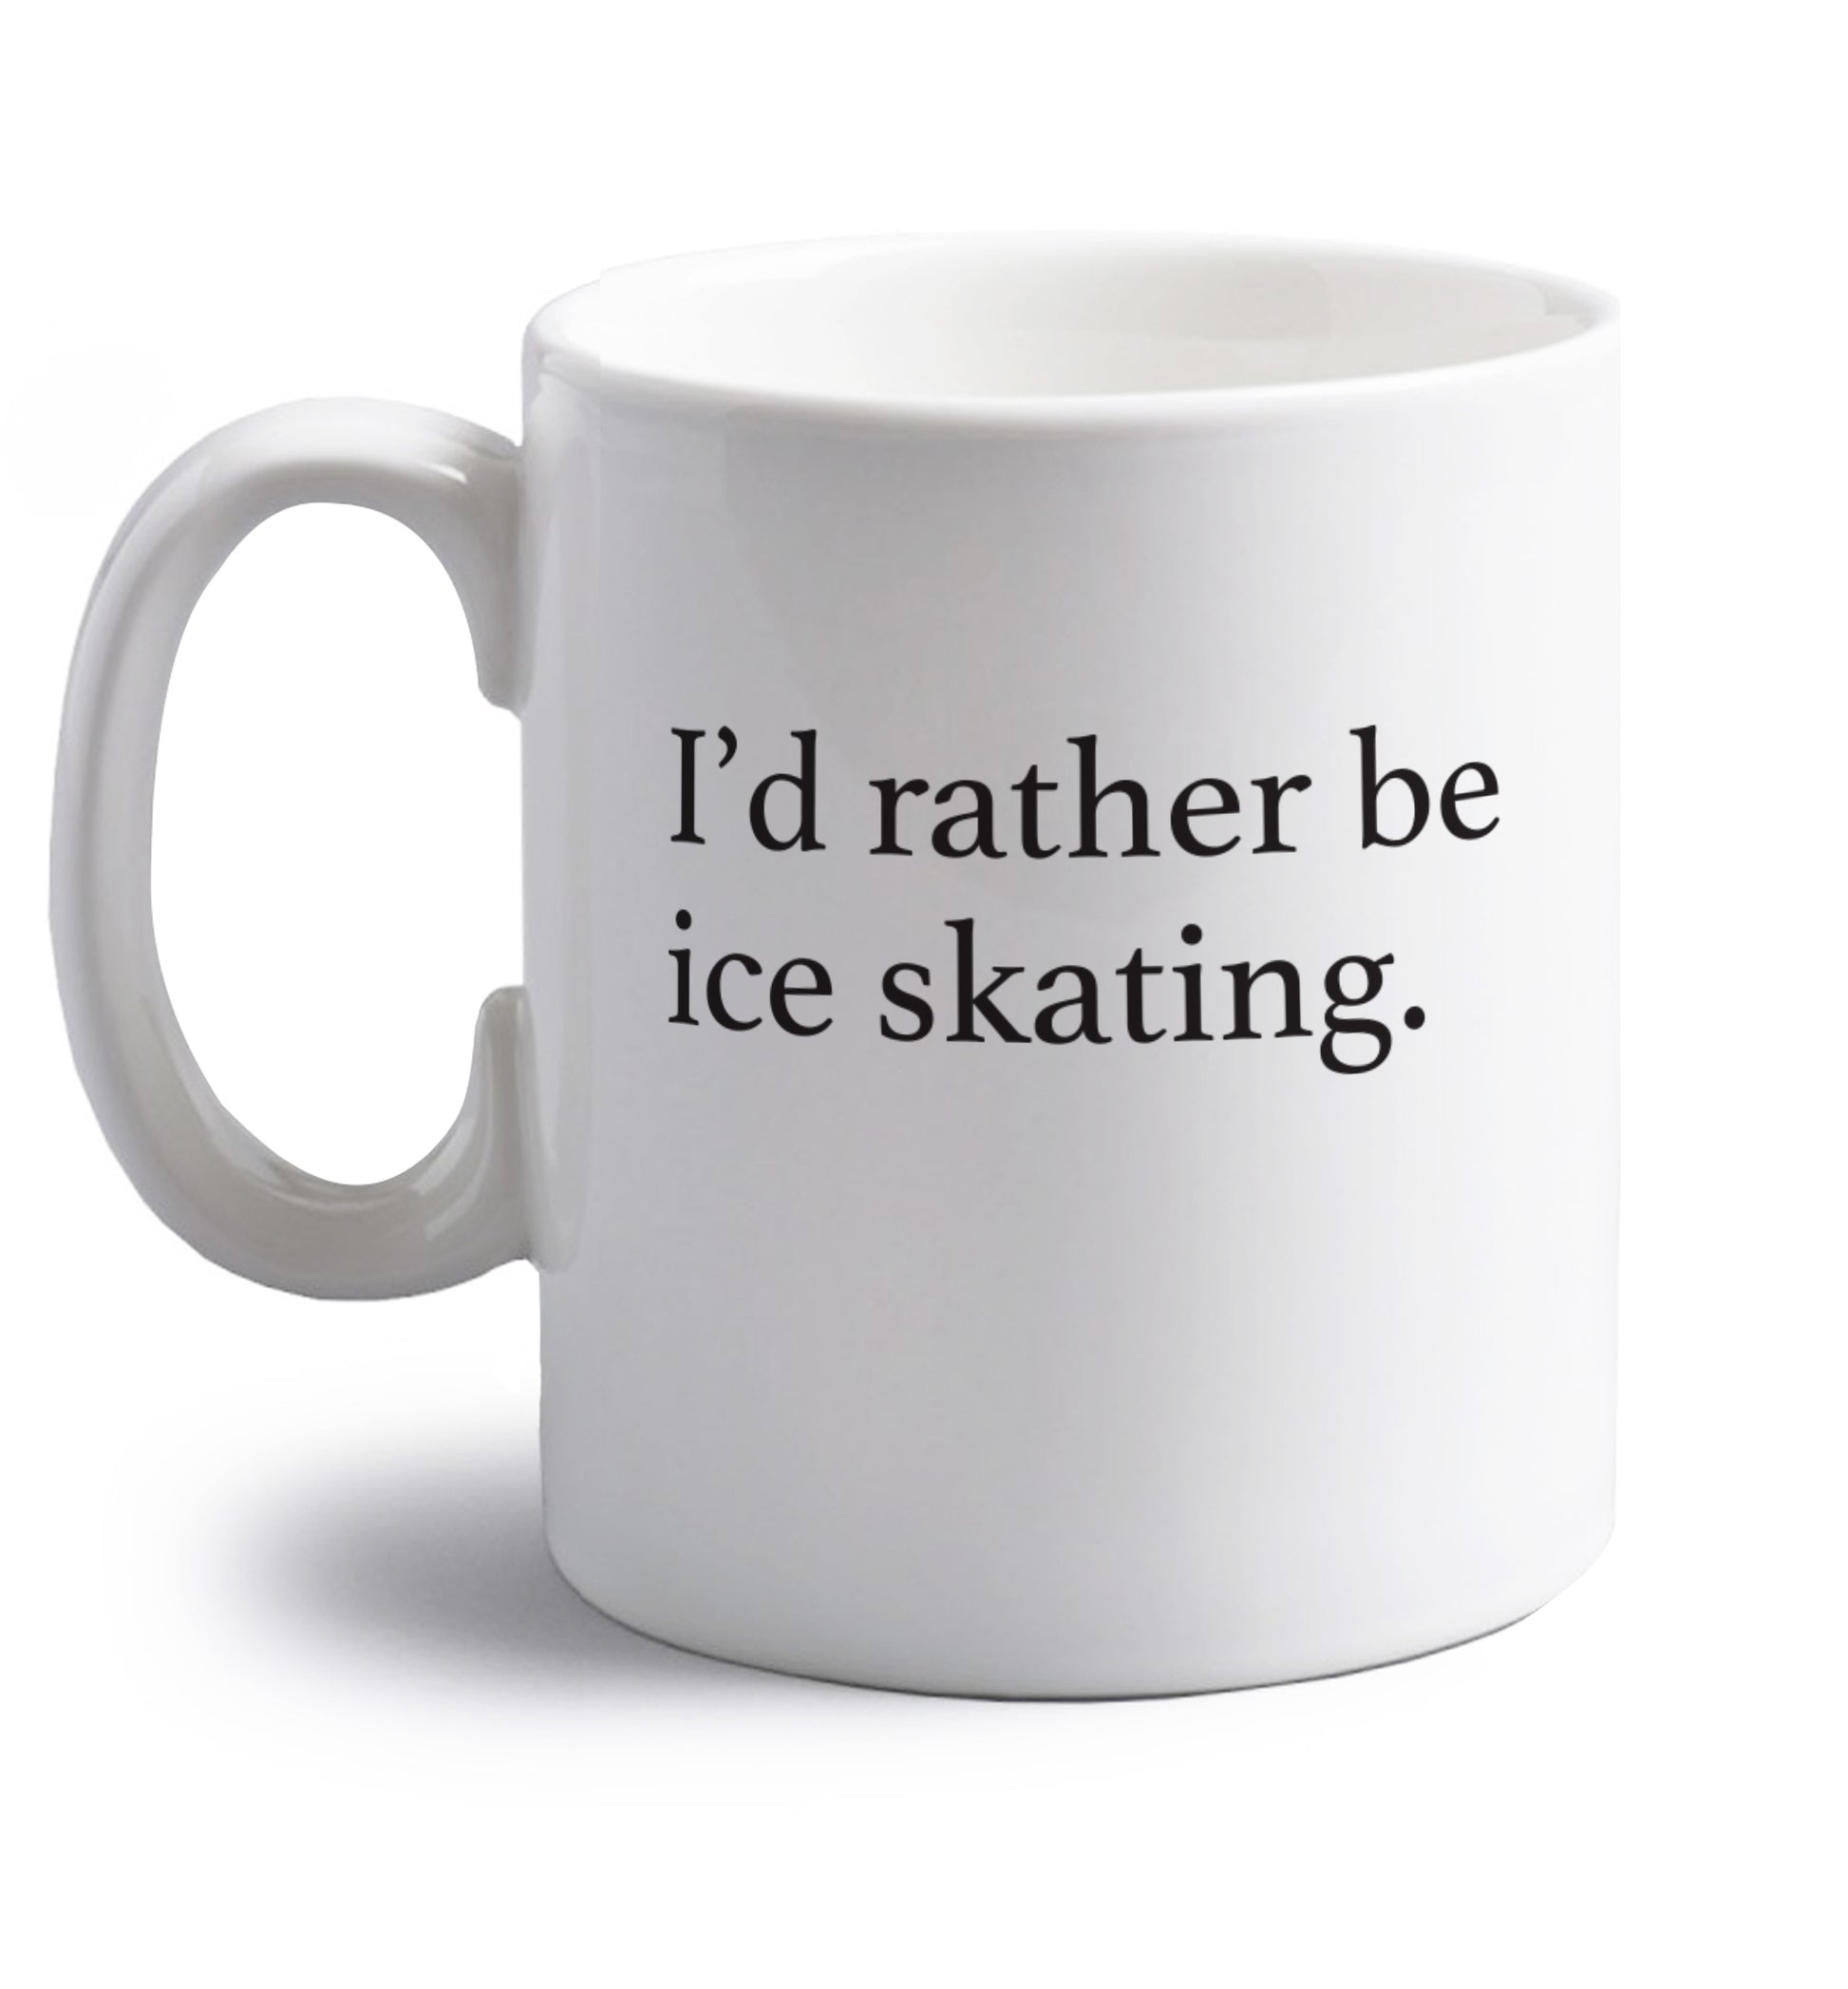 I'd rather be ice skating right handed white ceramic mug 